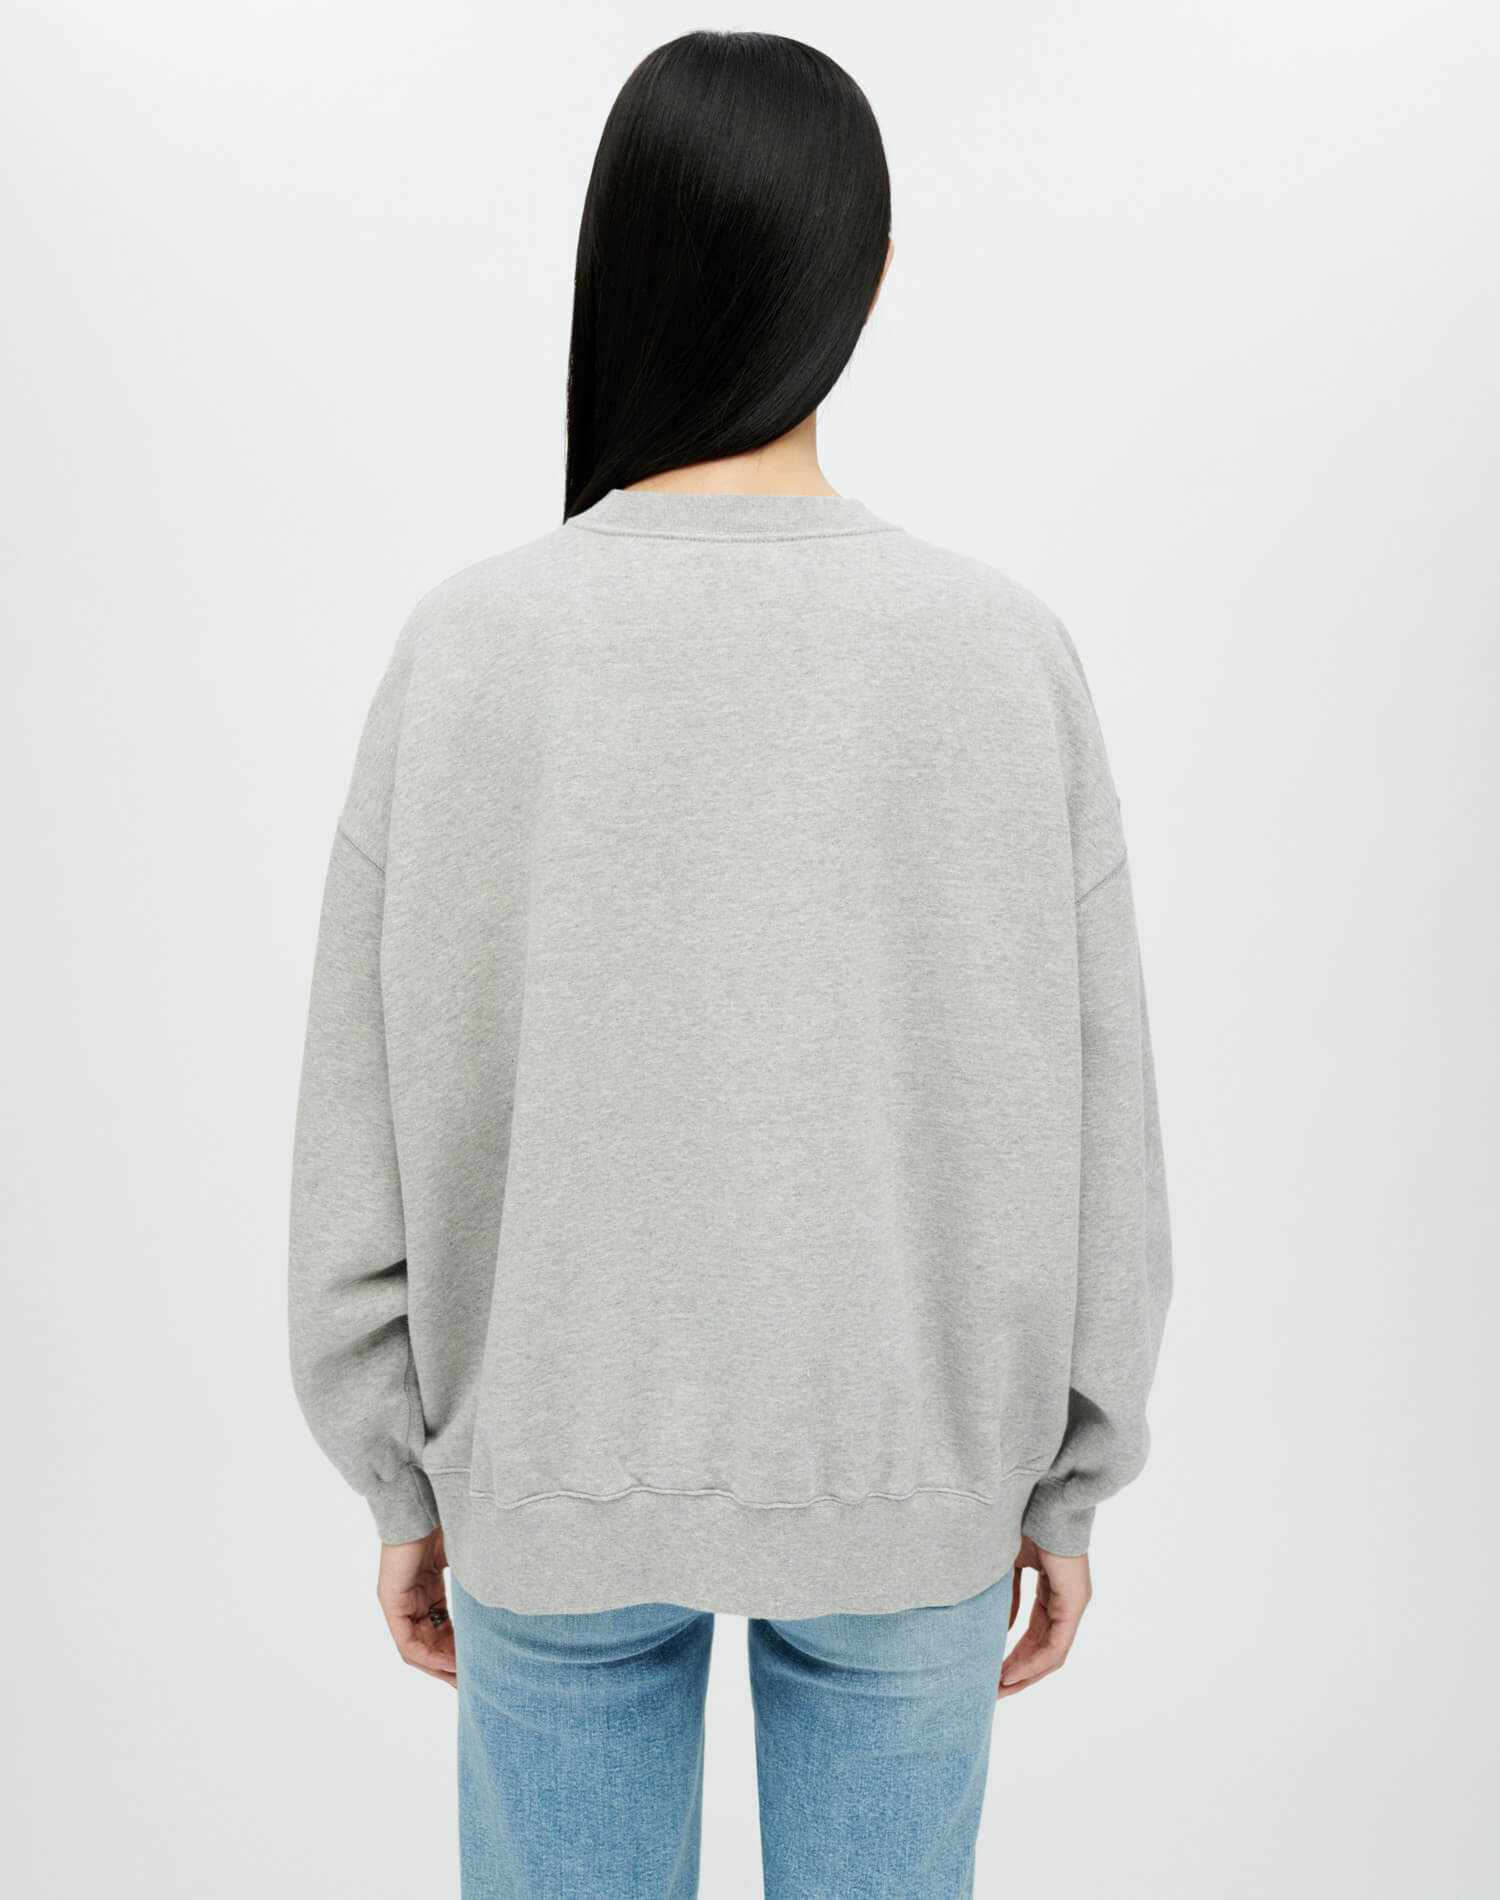 Hanes Oversized Crewneck Sweatshirt - Heather Grey